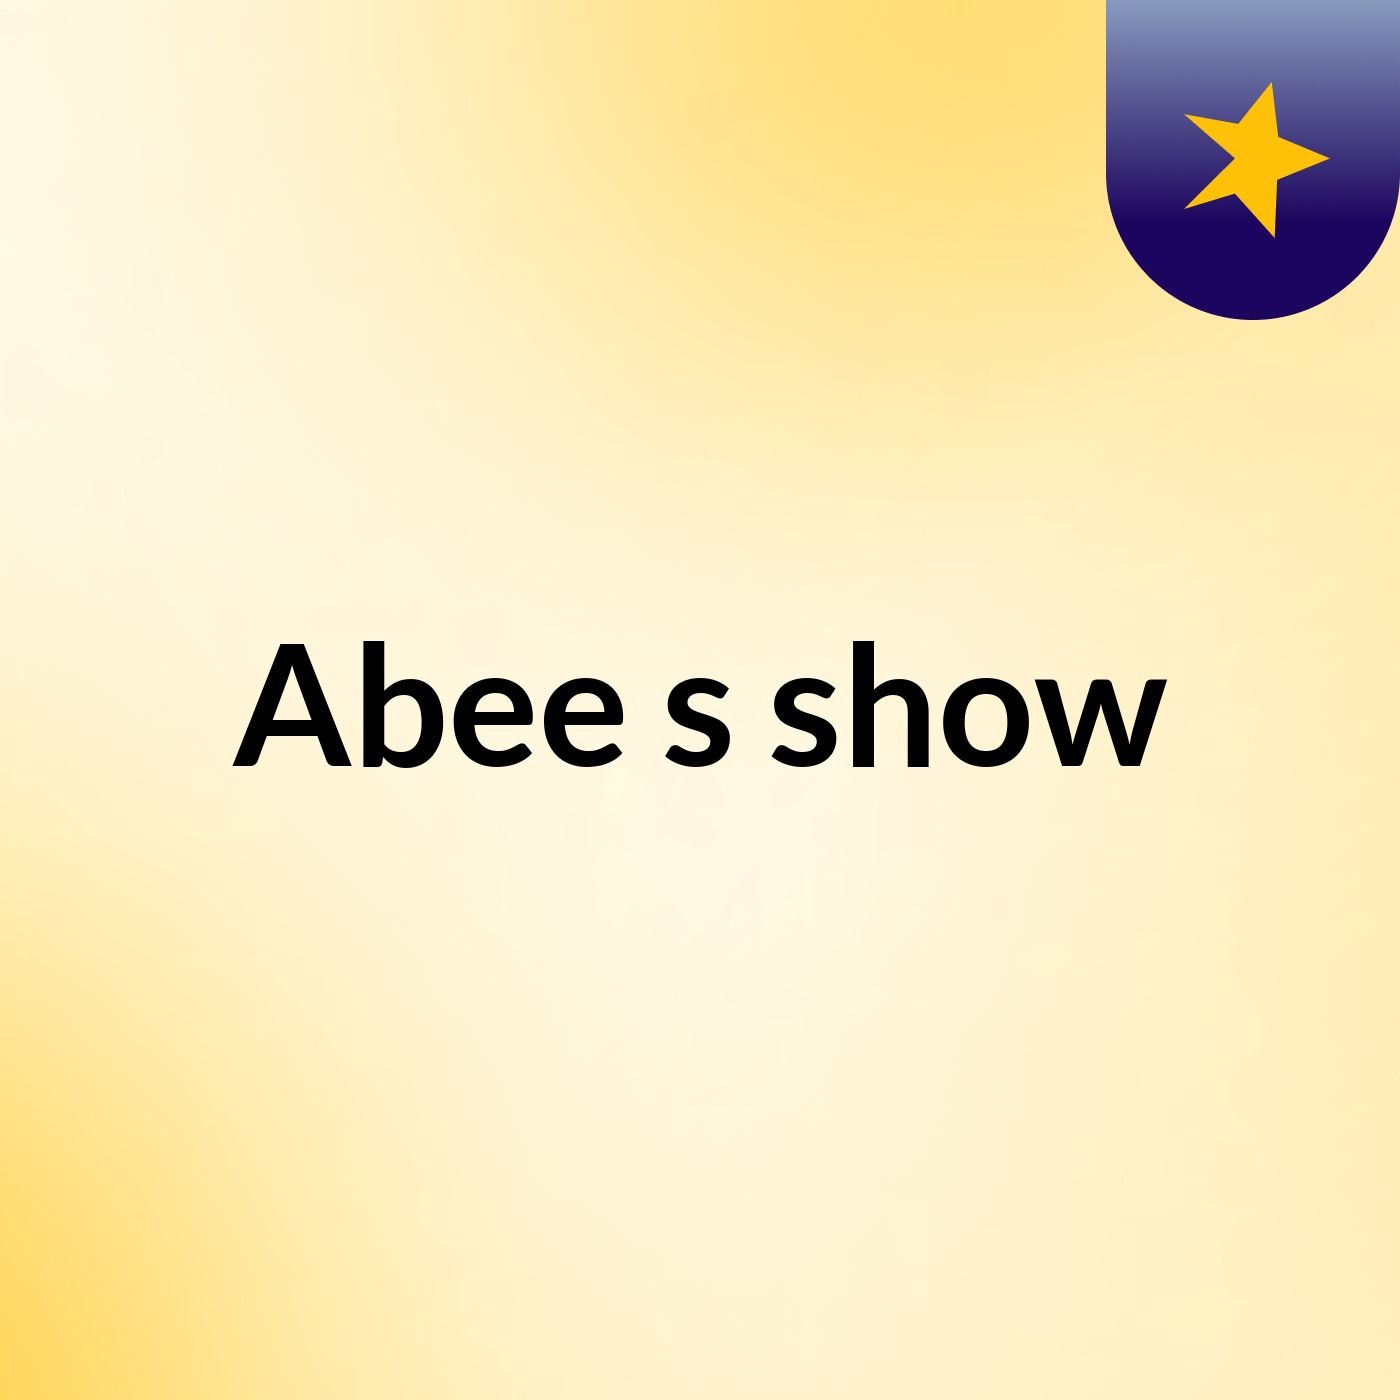 Abee's show